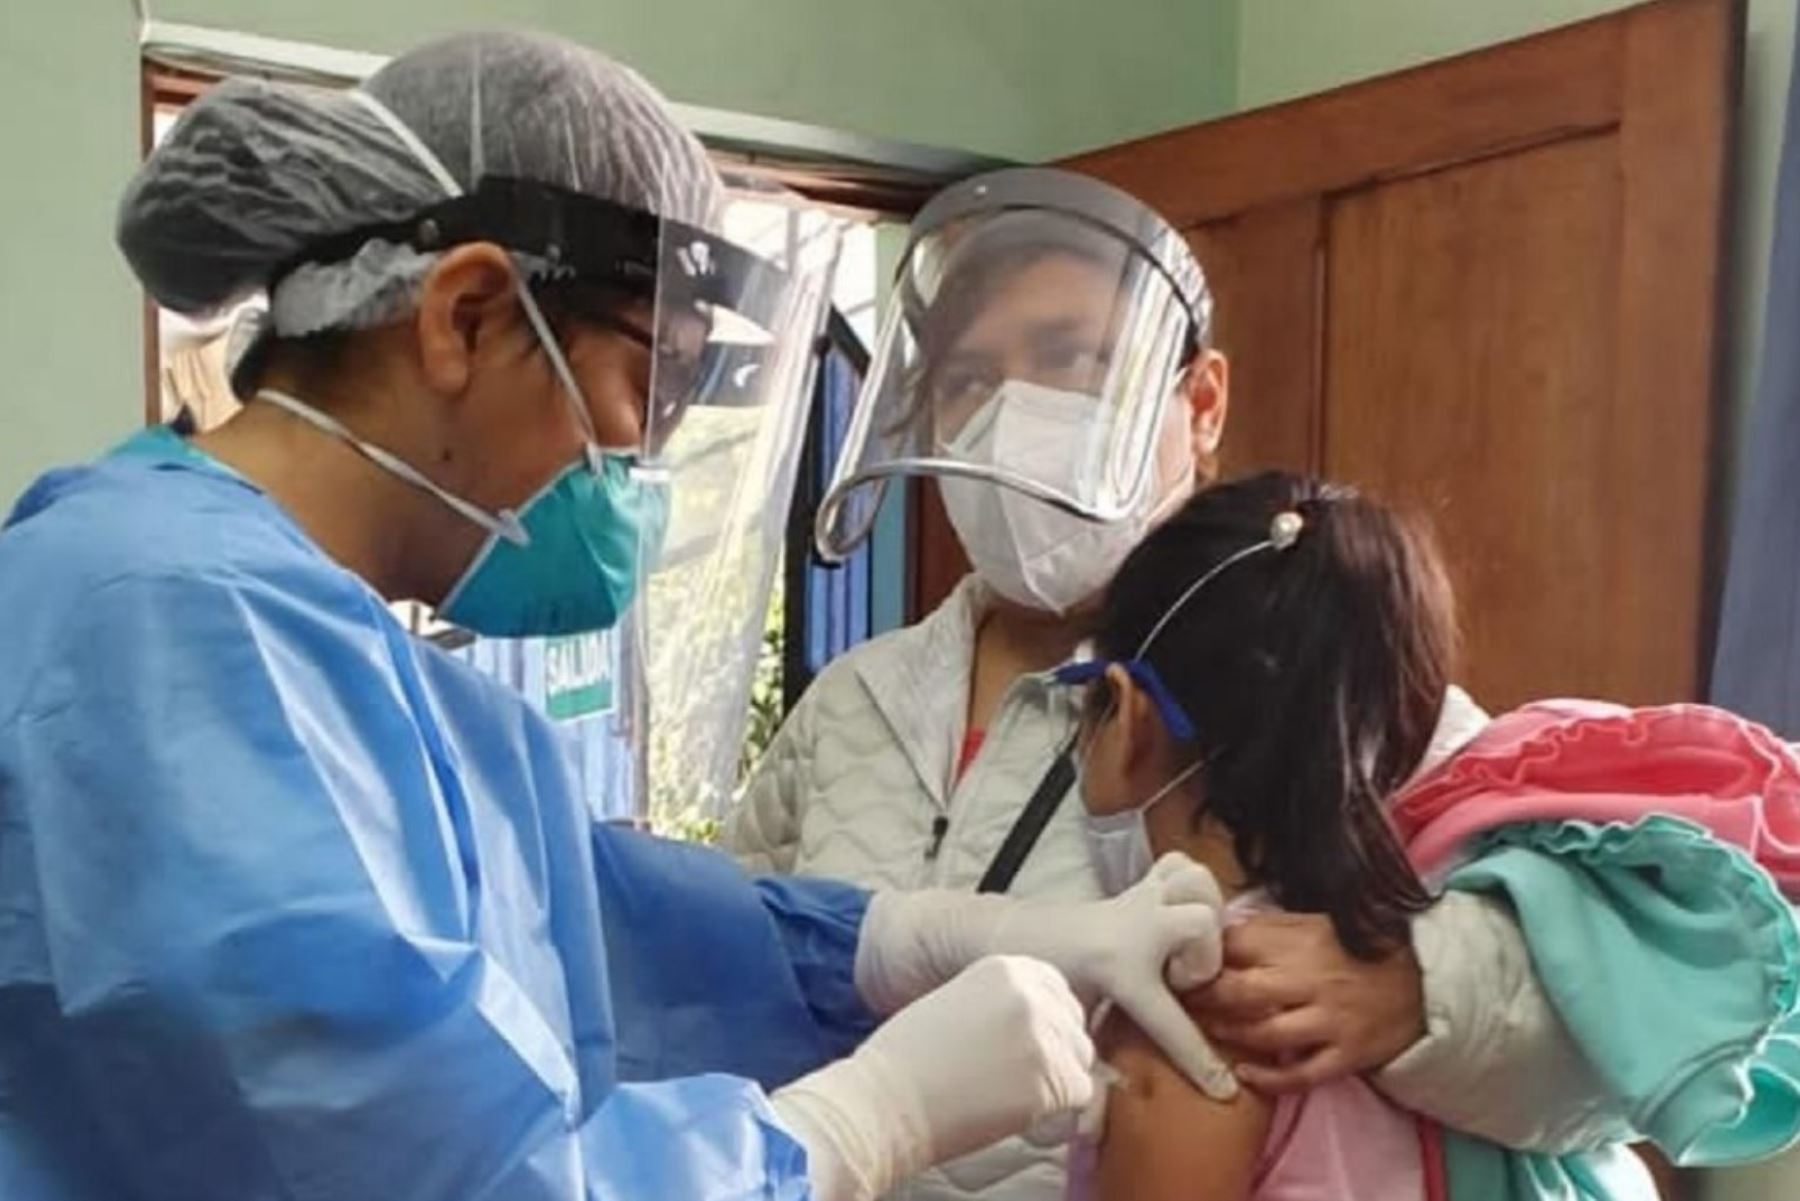 El Ministerio de Salud brinda reconocimiento a los profesionales y trabajadores del sector durante la pandemia del covid-19. Foto: ANDINA/Difusión